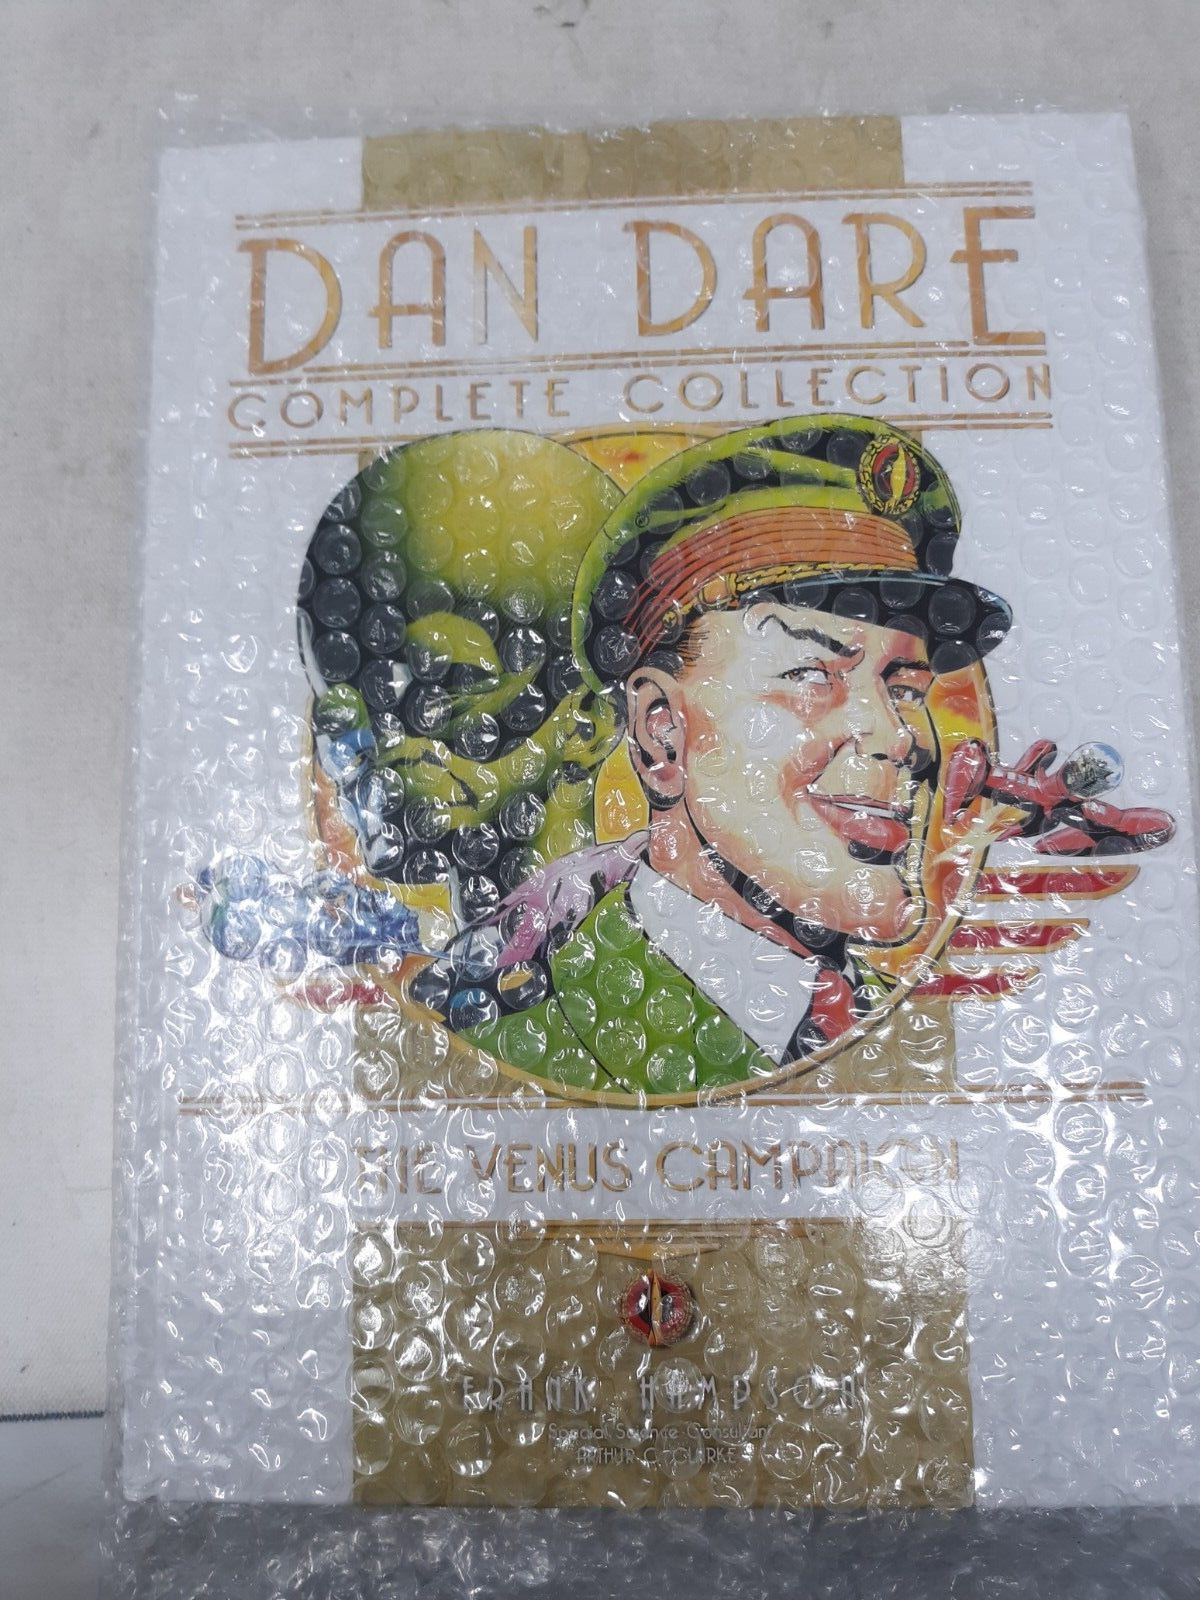 Dan Dare Complete Collection #1 (Titan, November 2018)